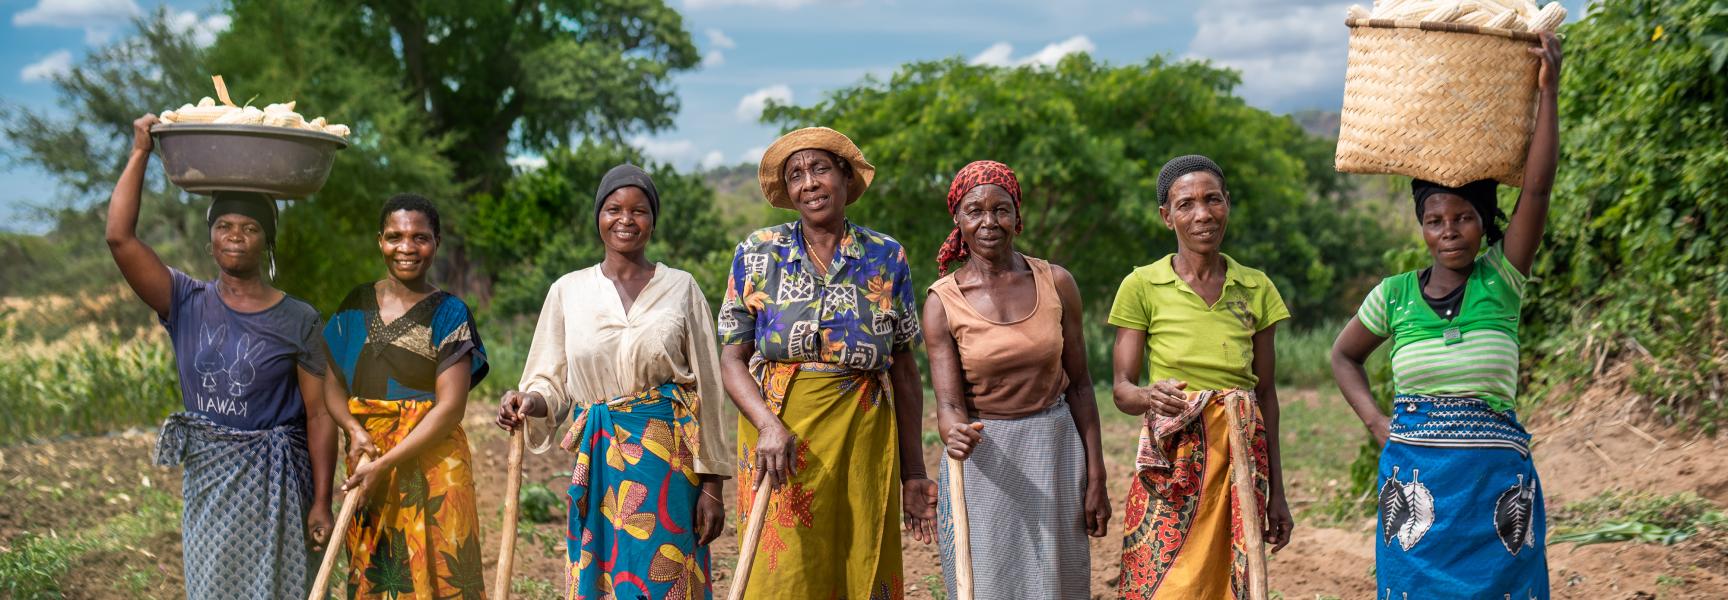 Women farmers in their field in Malawi